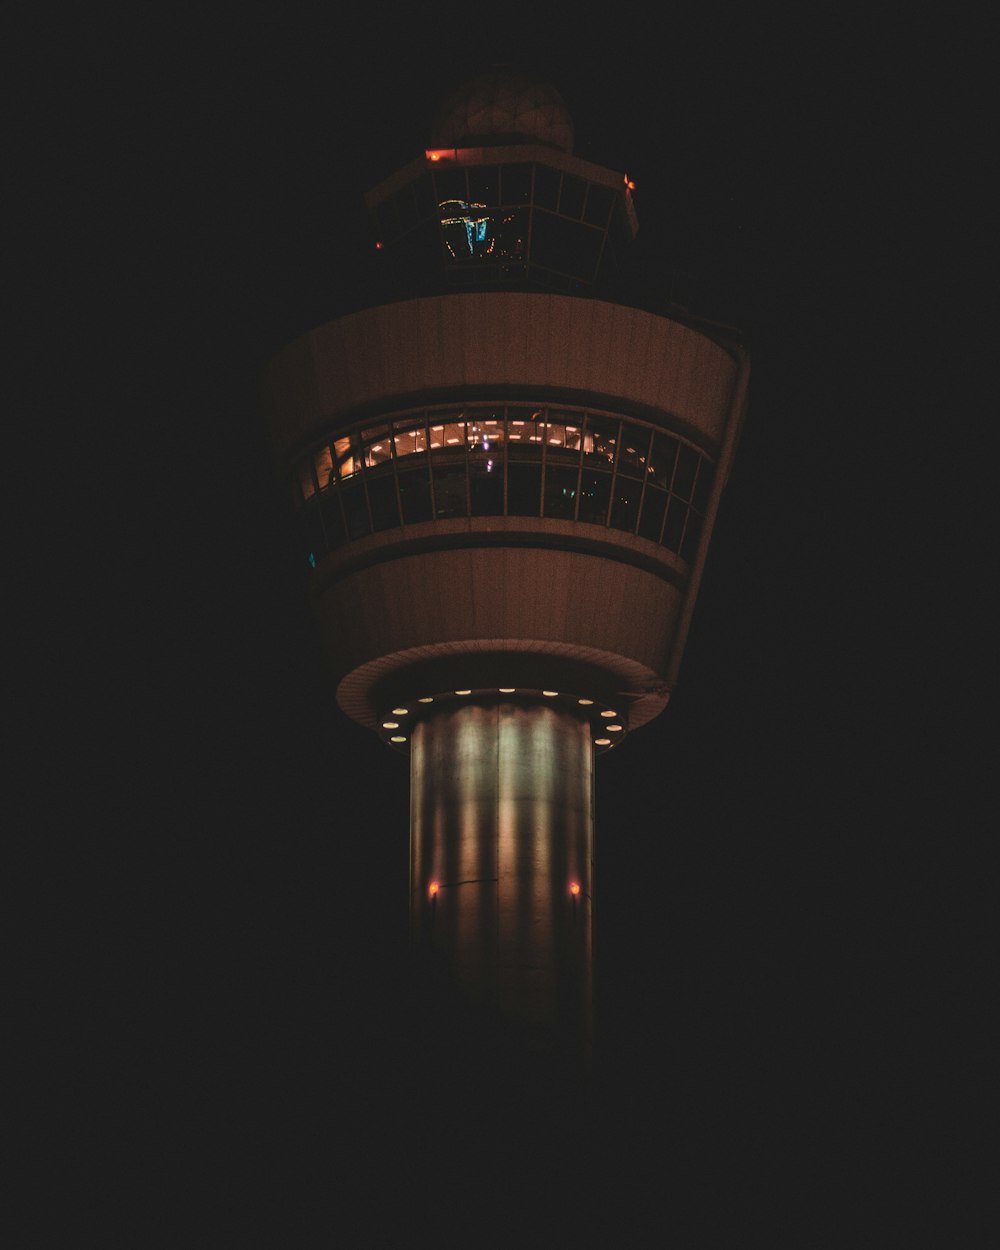 turned-on lights on tower